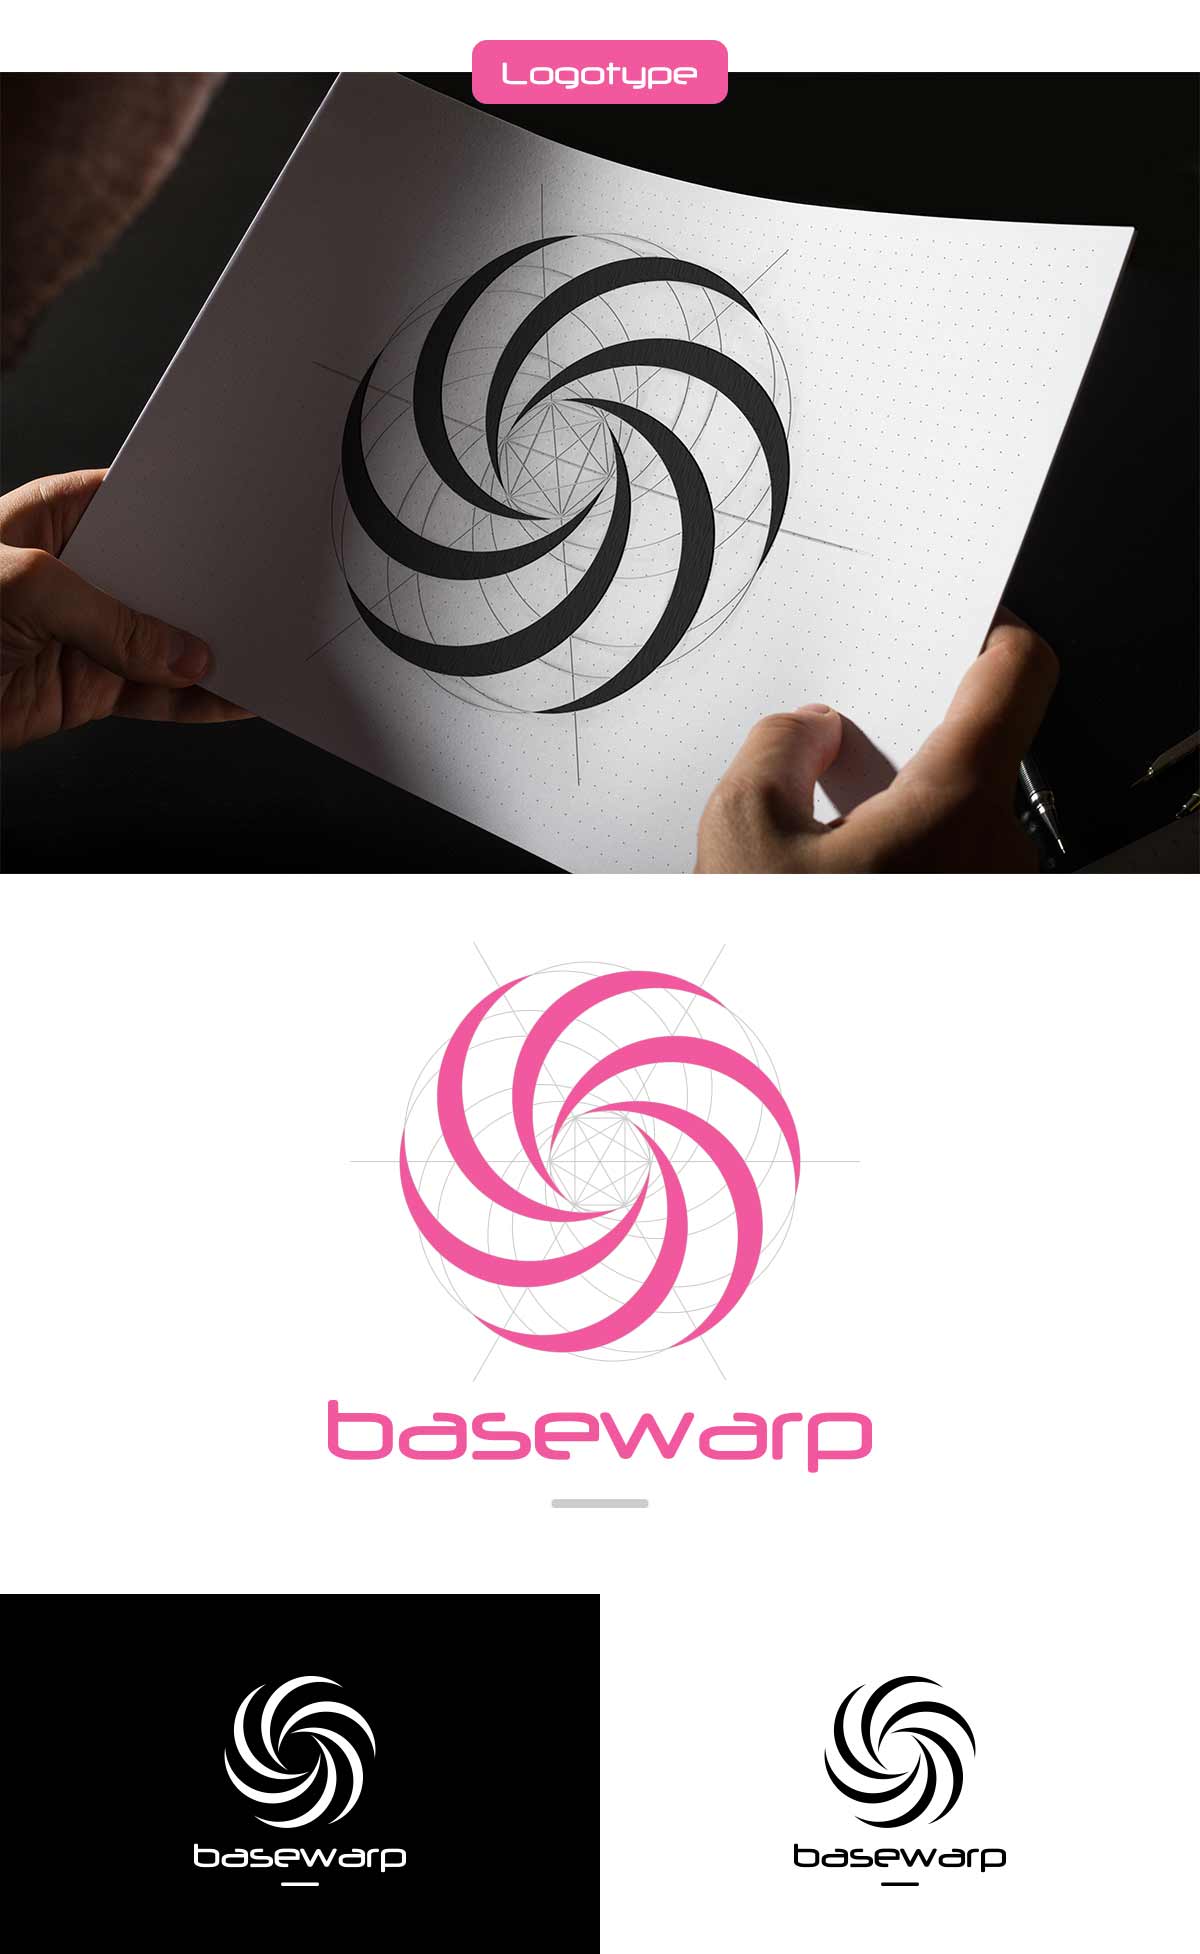 gregory-dreamer-project-basewarp-03-logotype